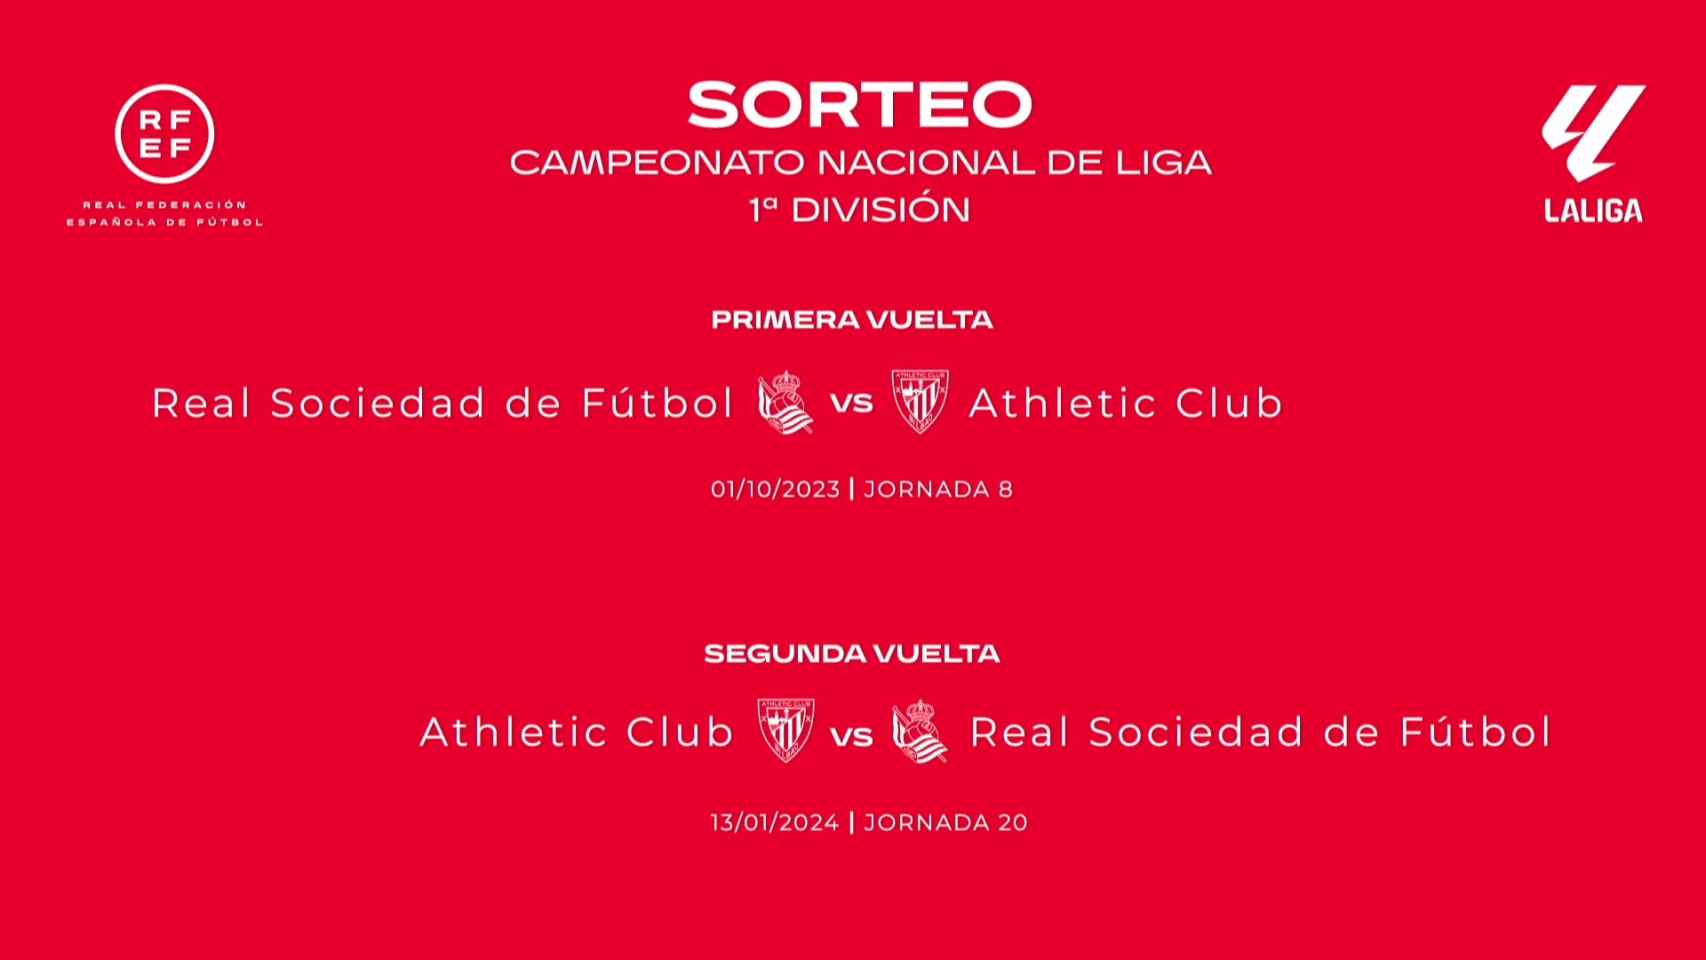 Duelos Athletic - Real Sociedad en La Liga 2023 / 2024